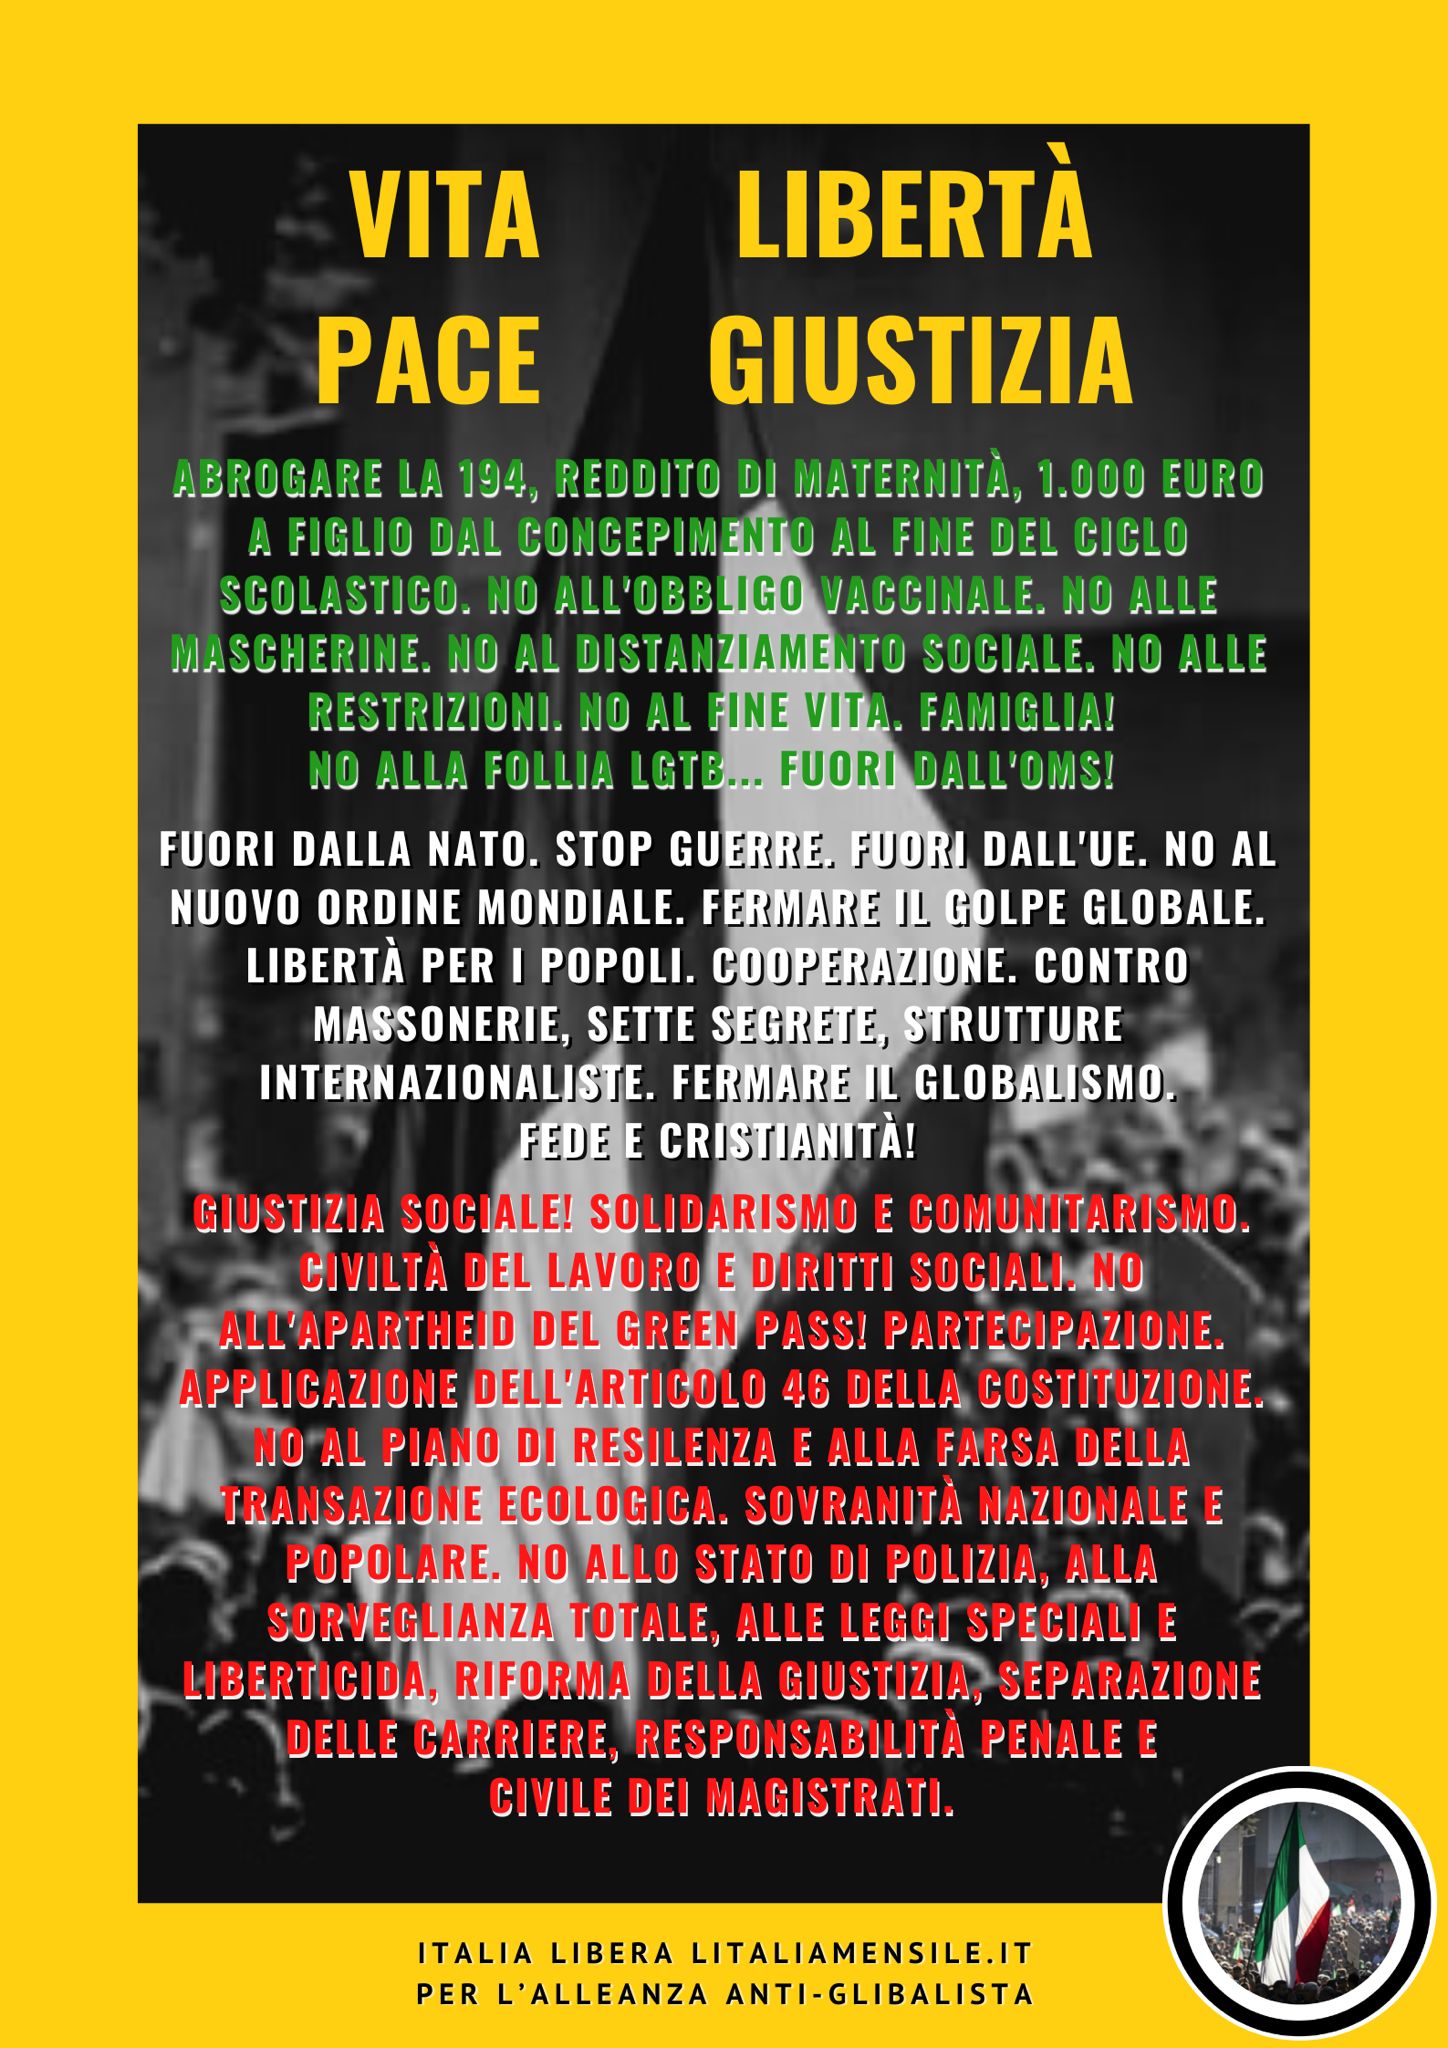 Il Manifesto Dei Valori Per L’Italia Libera: Un Pensiero Forte Da Sostenere